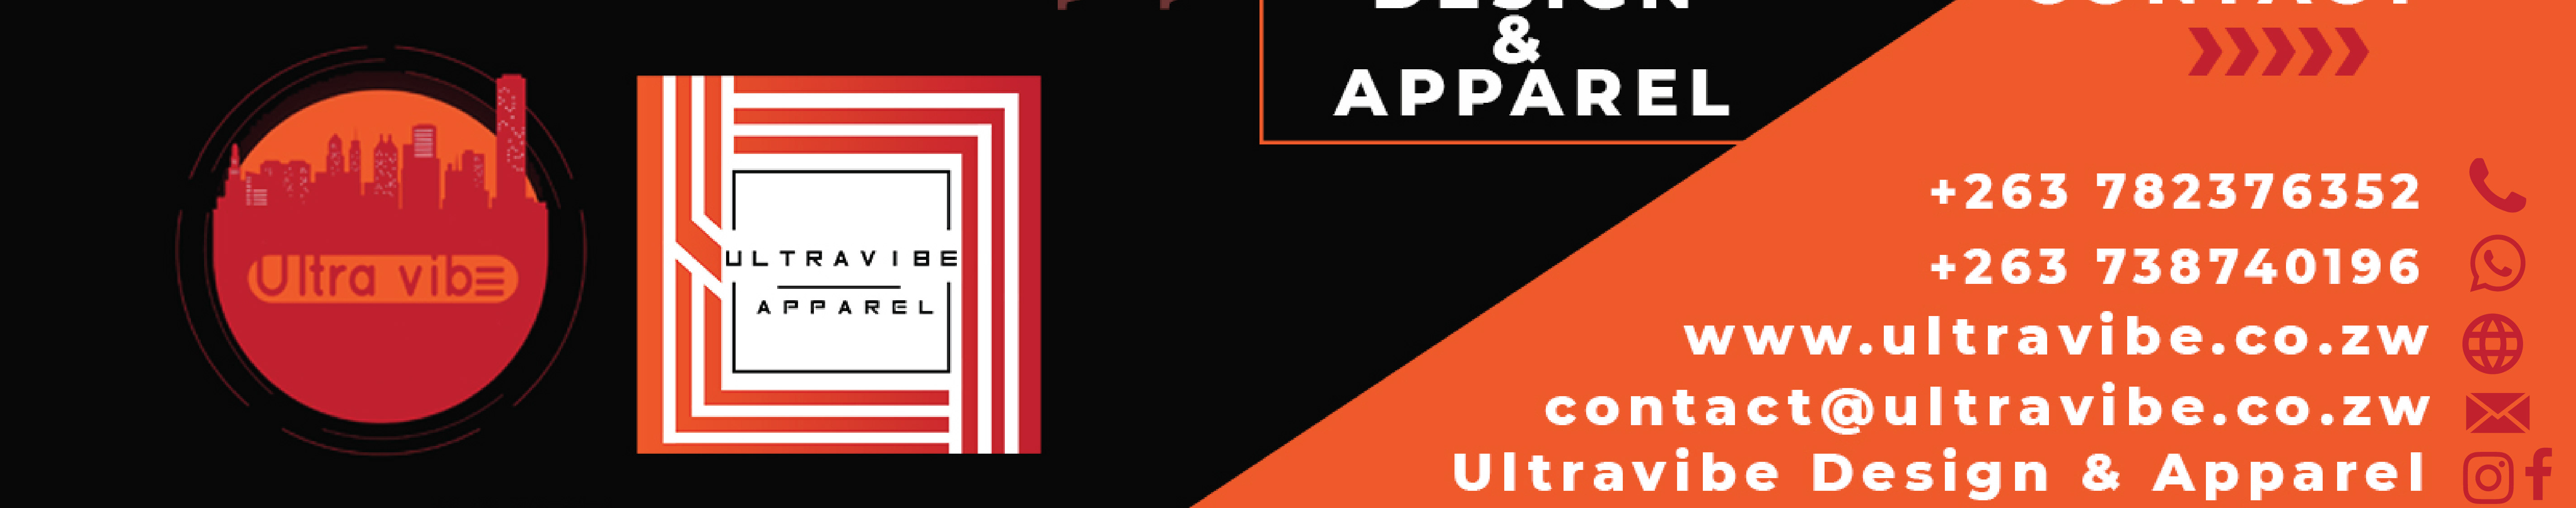 Ultravibe Design & Apparel's profile banner